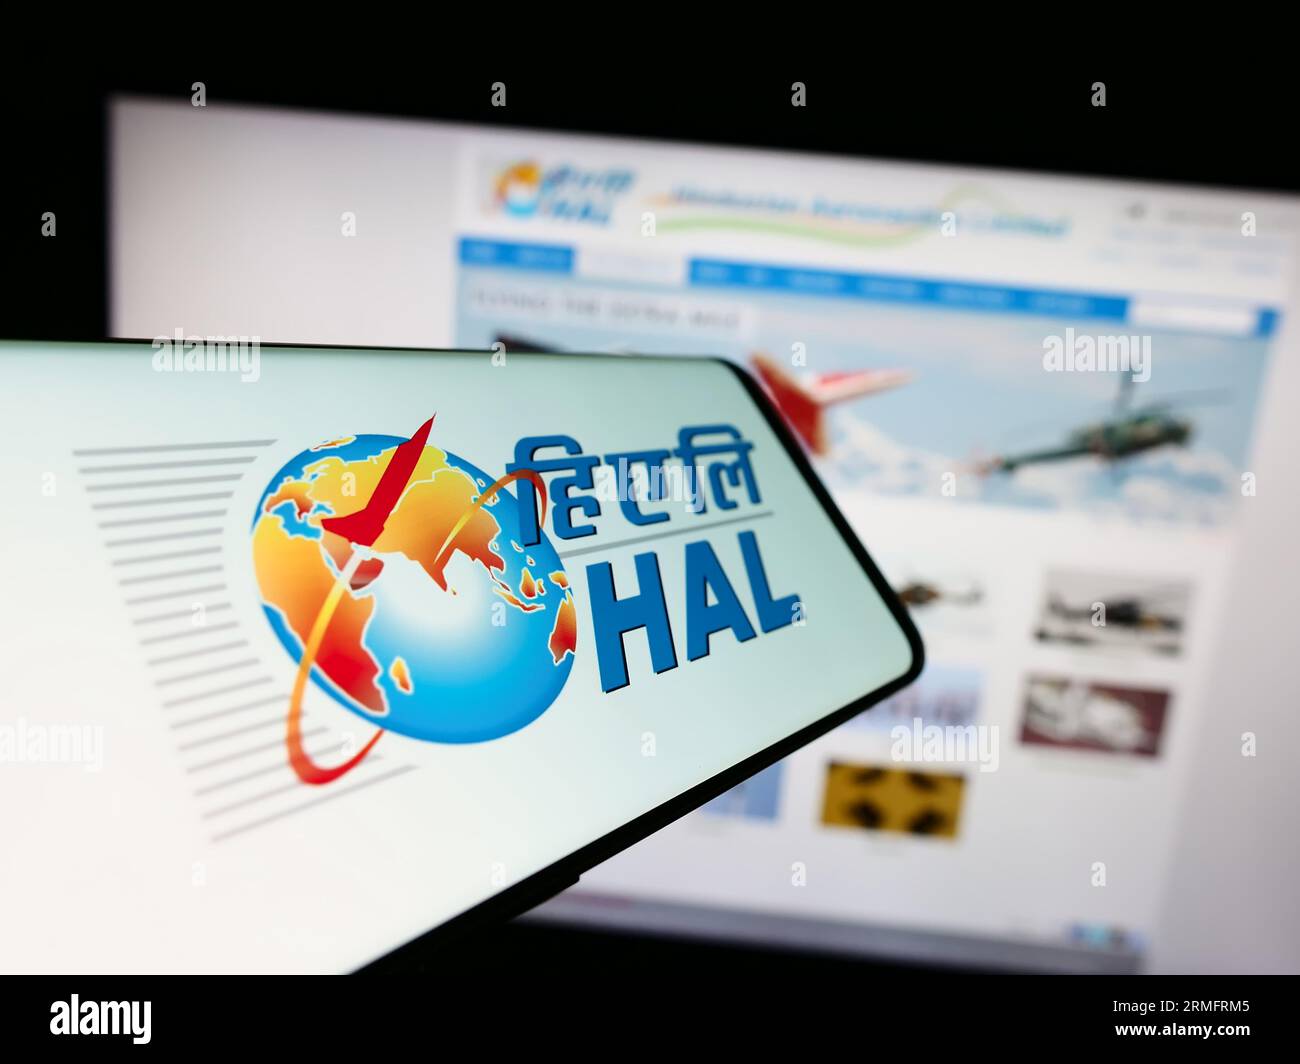 Cellulare con logo della società Hindustan Aeronautics Limited (HAL) sullo schermo davanti al sito Web aziendale. Concentrarsi sul centro del display del telefono. Foto Stock